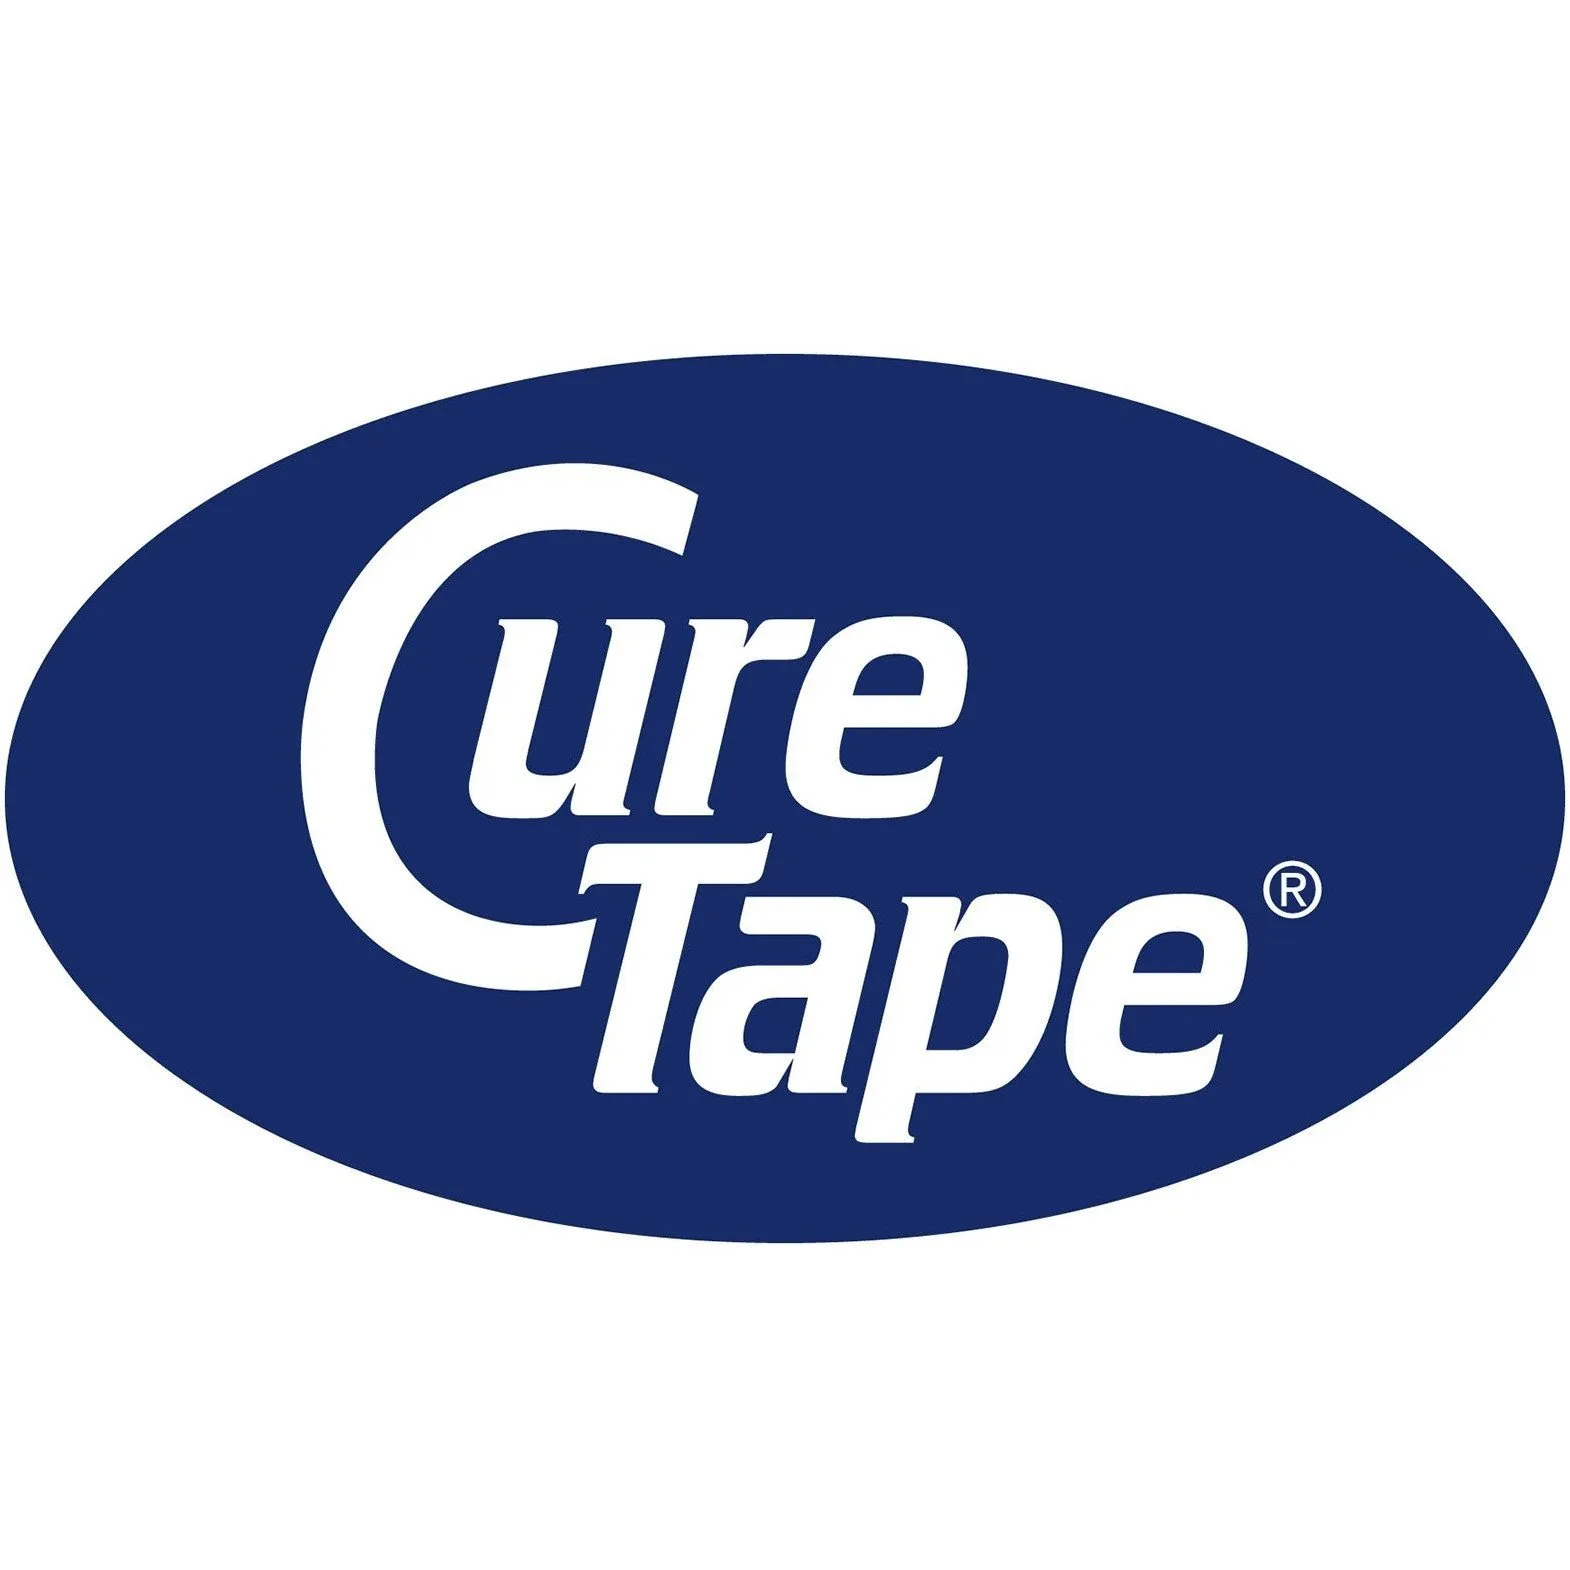 CureTape Art Blauw Ruit